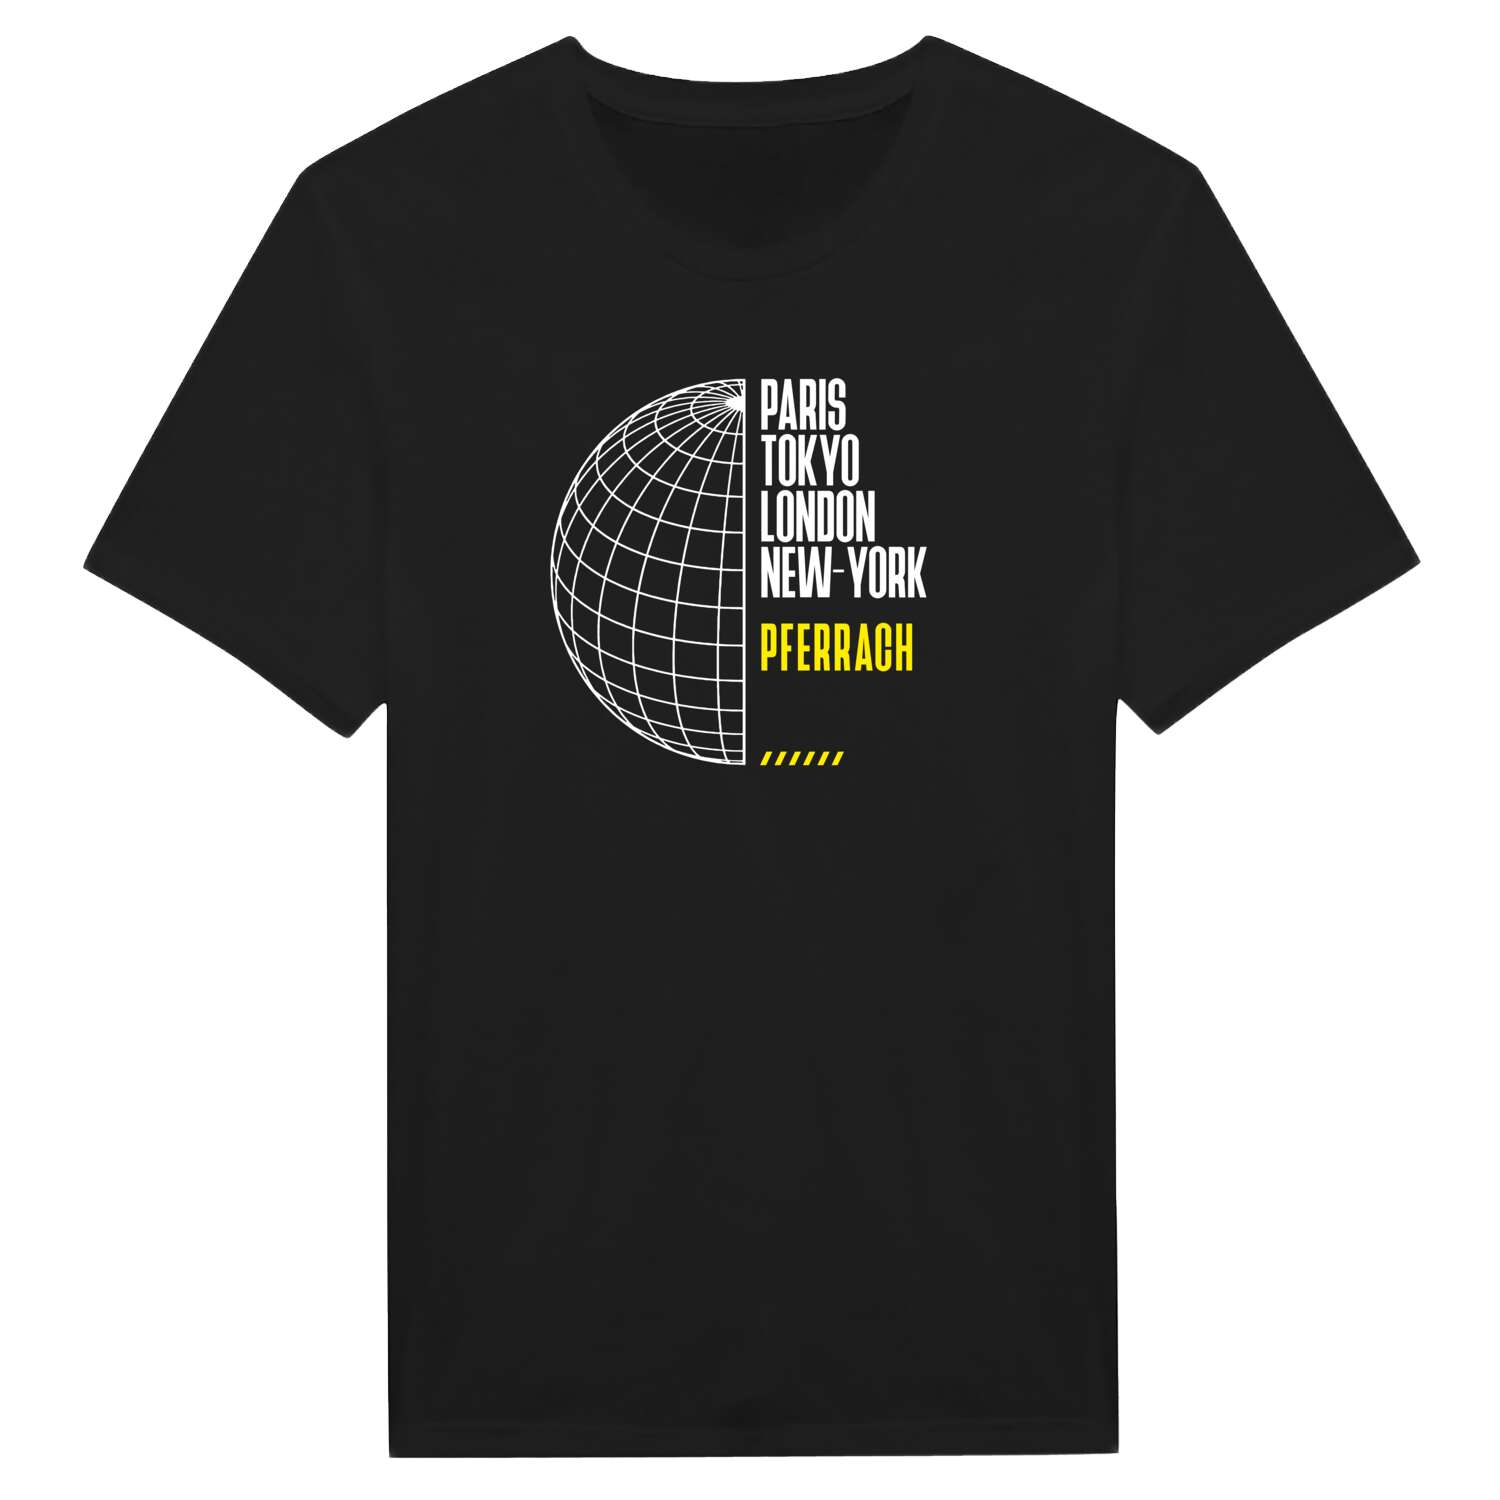 Pferrach T-Shirt »Paris Tokyo London«